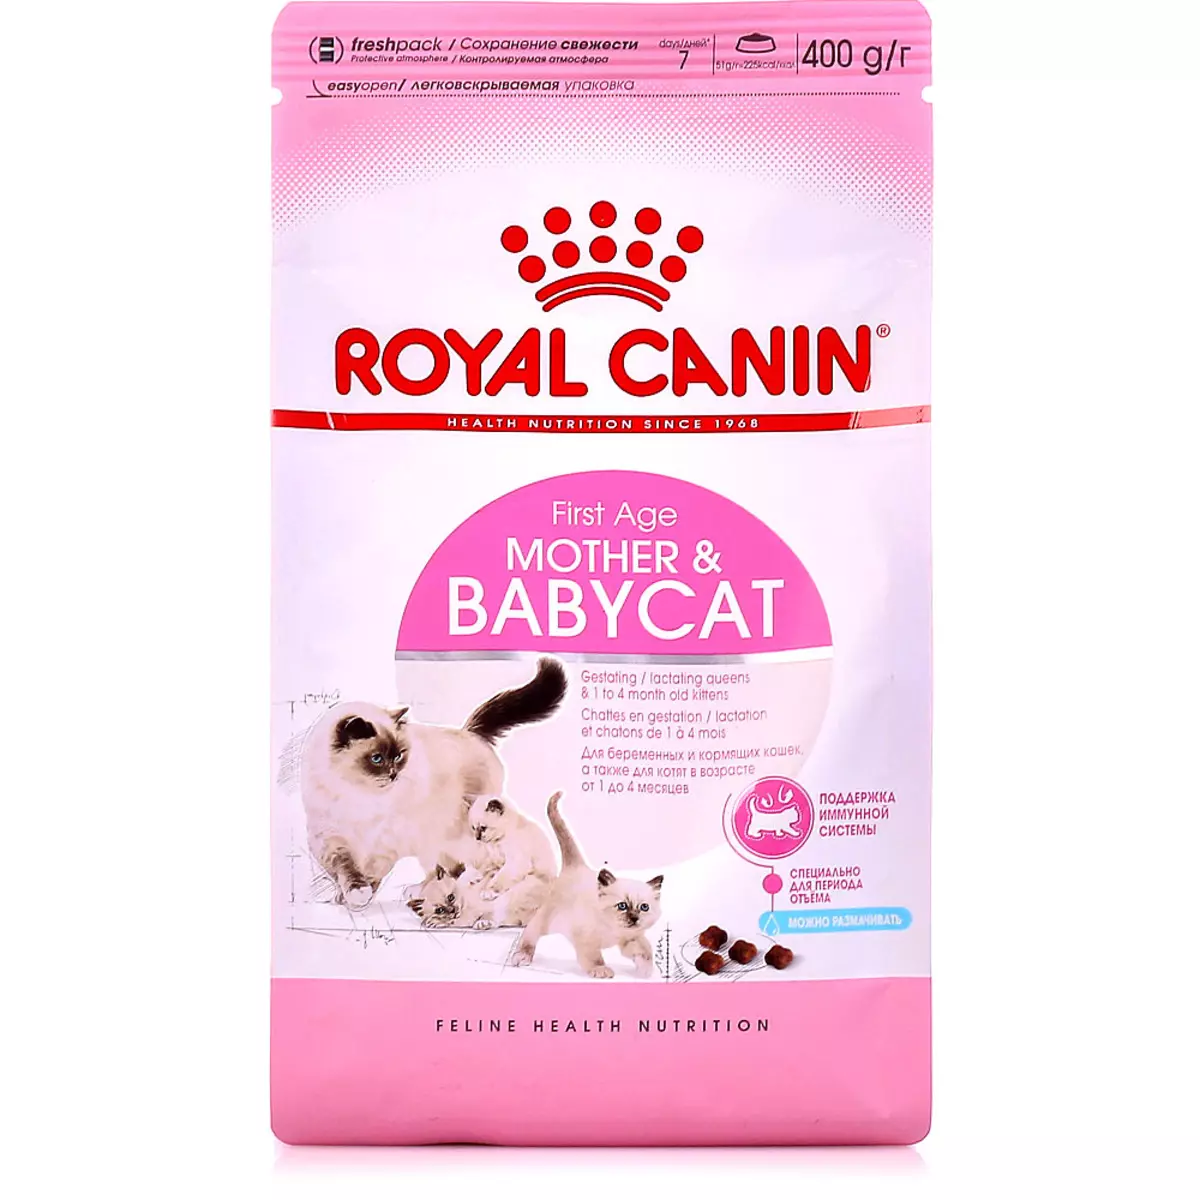 Suche jedzenie dla kocięta Royal Canin: Kompozycja kotka do 12 miesięcy, pasza do sterylizowanych kocięta. Czy je zapach? Dawkowanie 22012_9